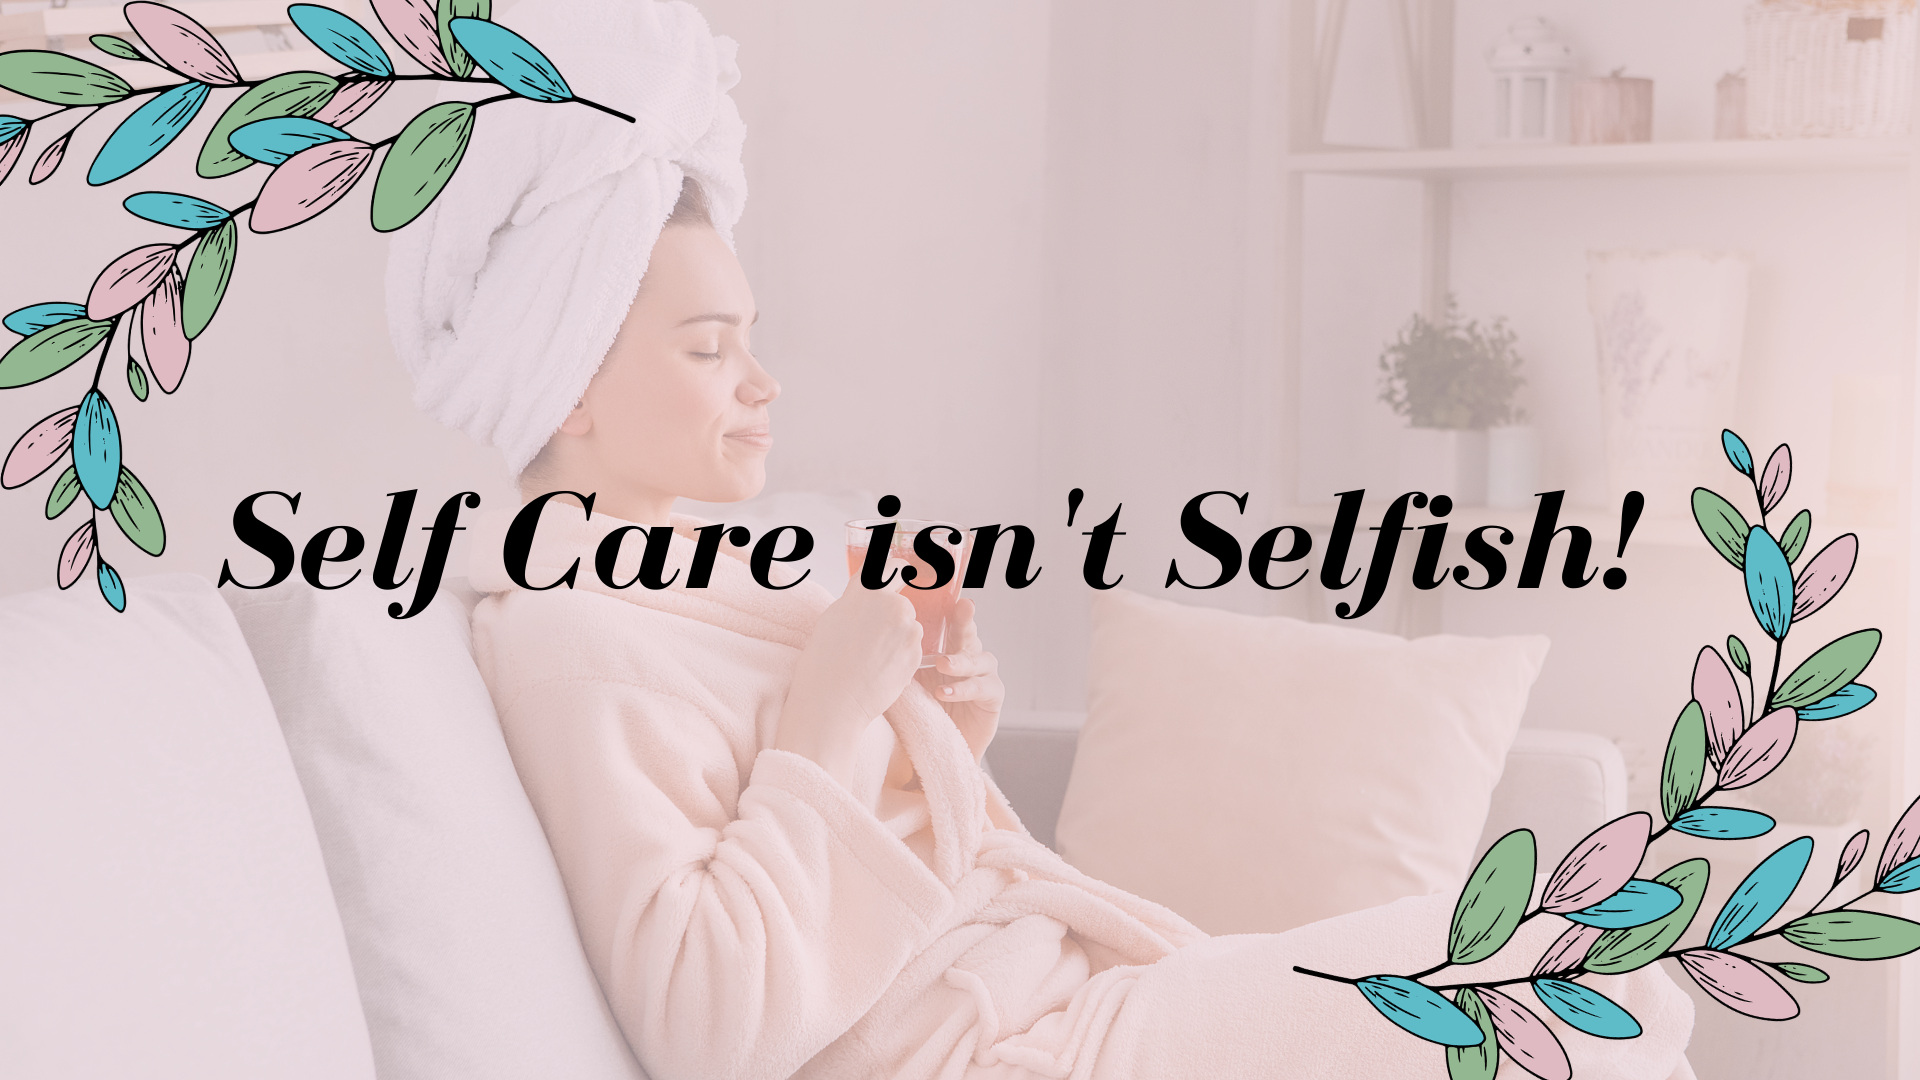 Self Care isn't Selfish!